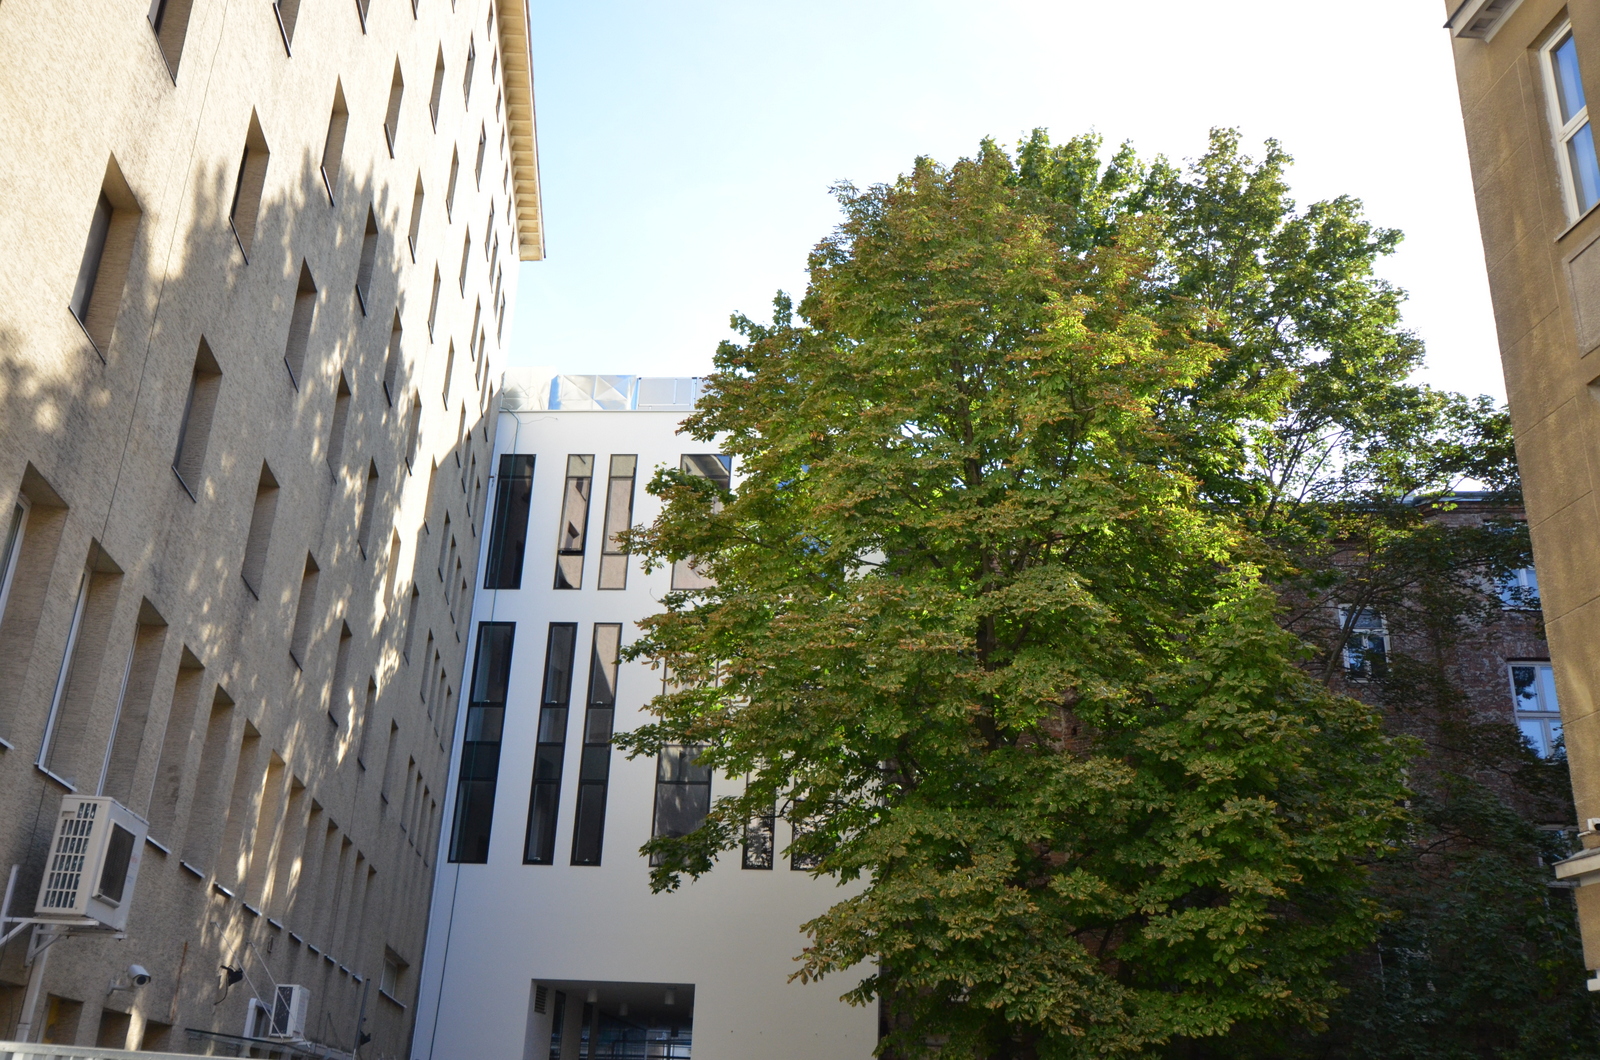 Biblioteka Główna Województwa Mazowieckiego w Warszawie - ujęcie zewnętrznej fasady Biblioteki wraz z rosnącym obok drzewem